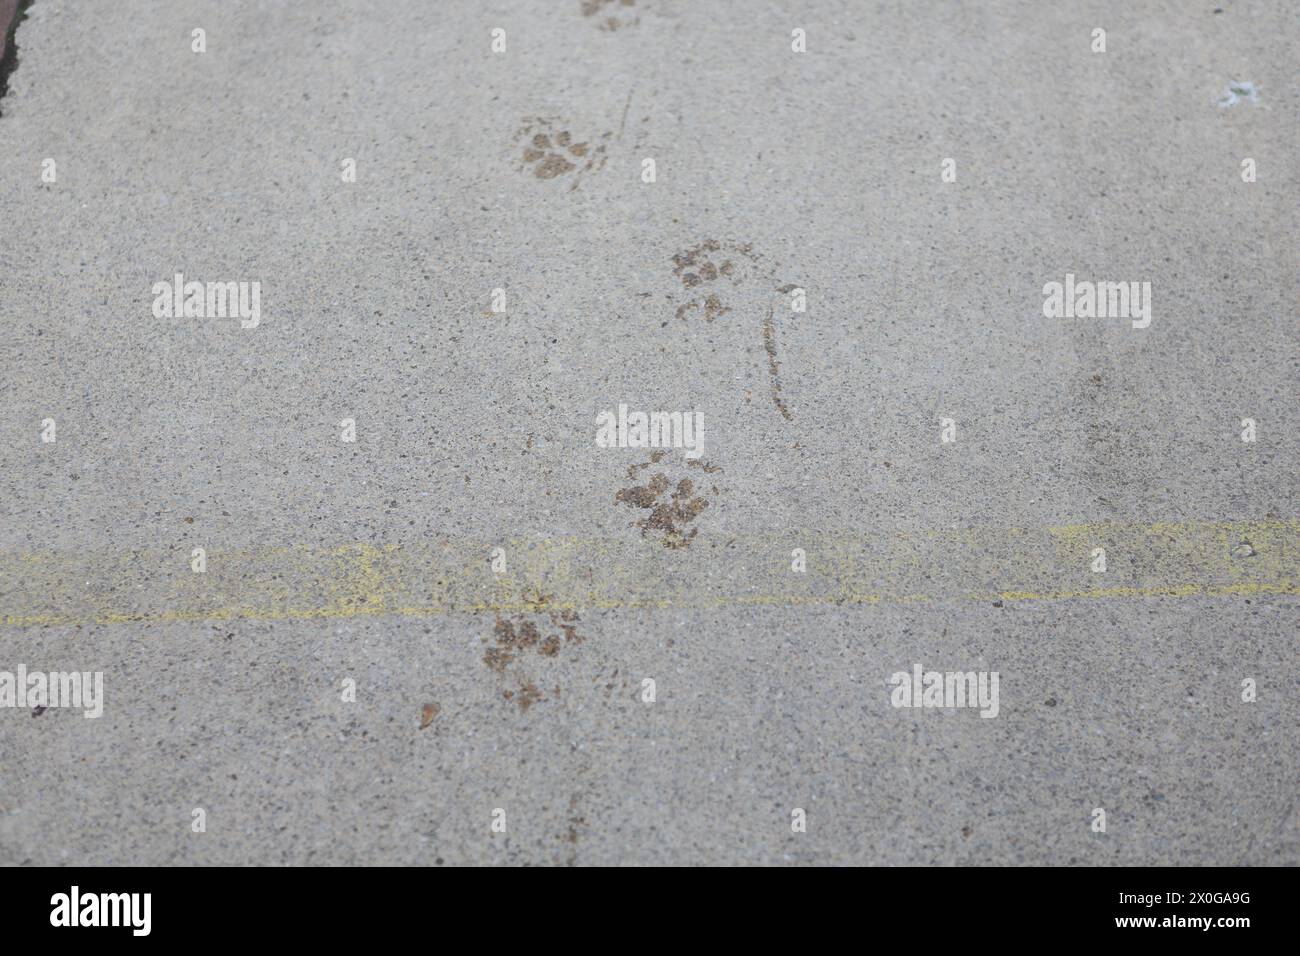 Le pedine del cane su una superficie in cemento concetto di percorso, trovare il senso della direzione di spostamento, camminare con il cane Foto Stock